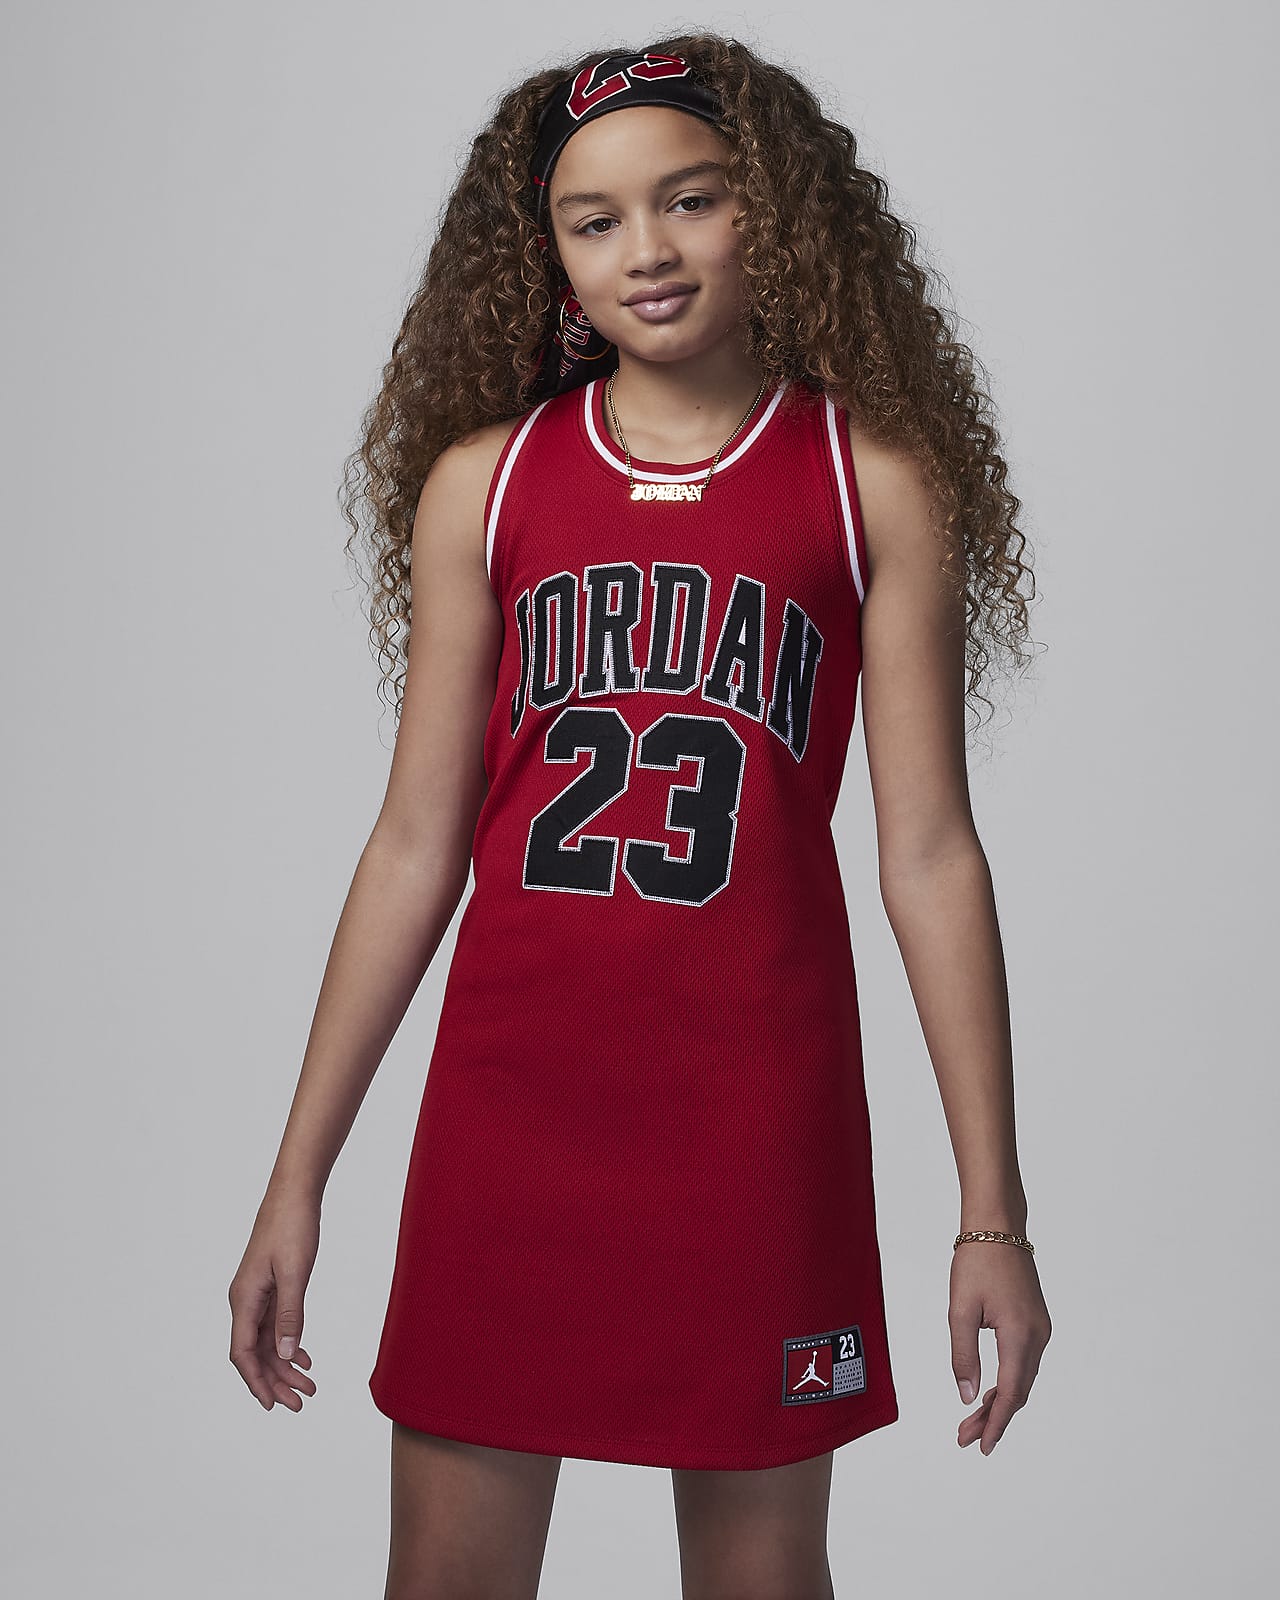 Šaty Dres Jordan 23 pro větší děti